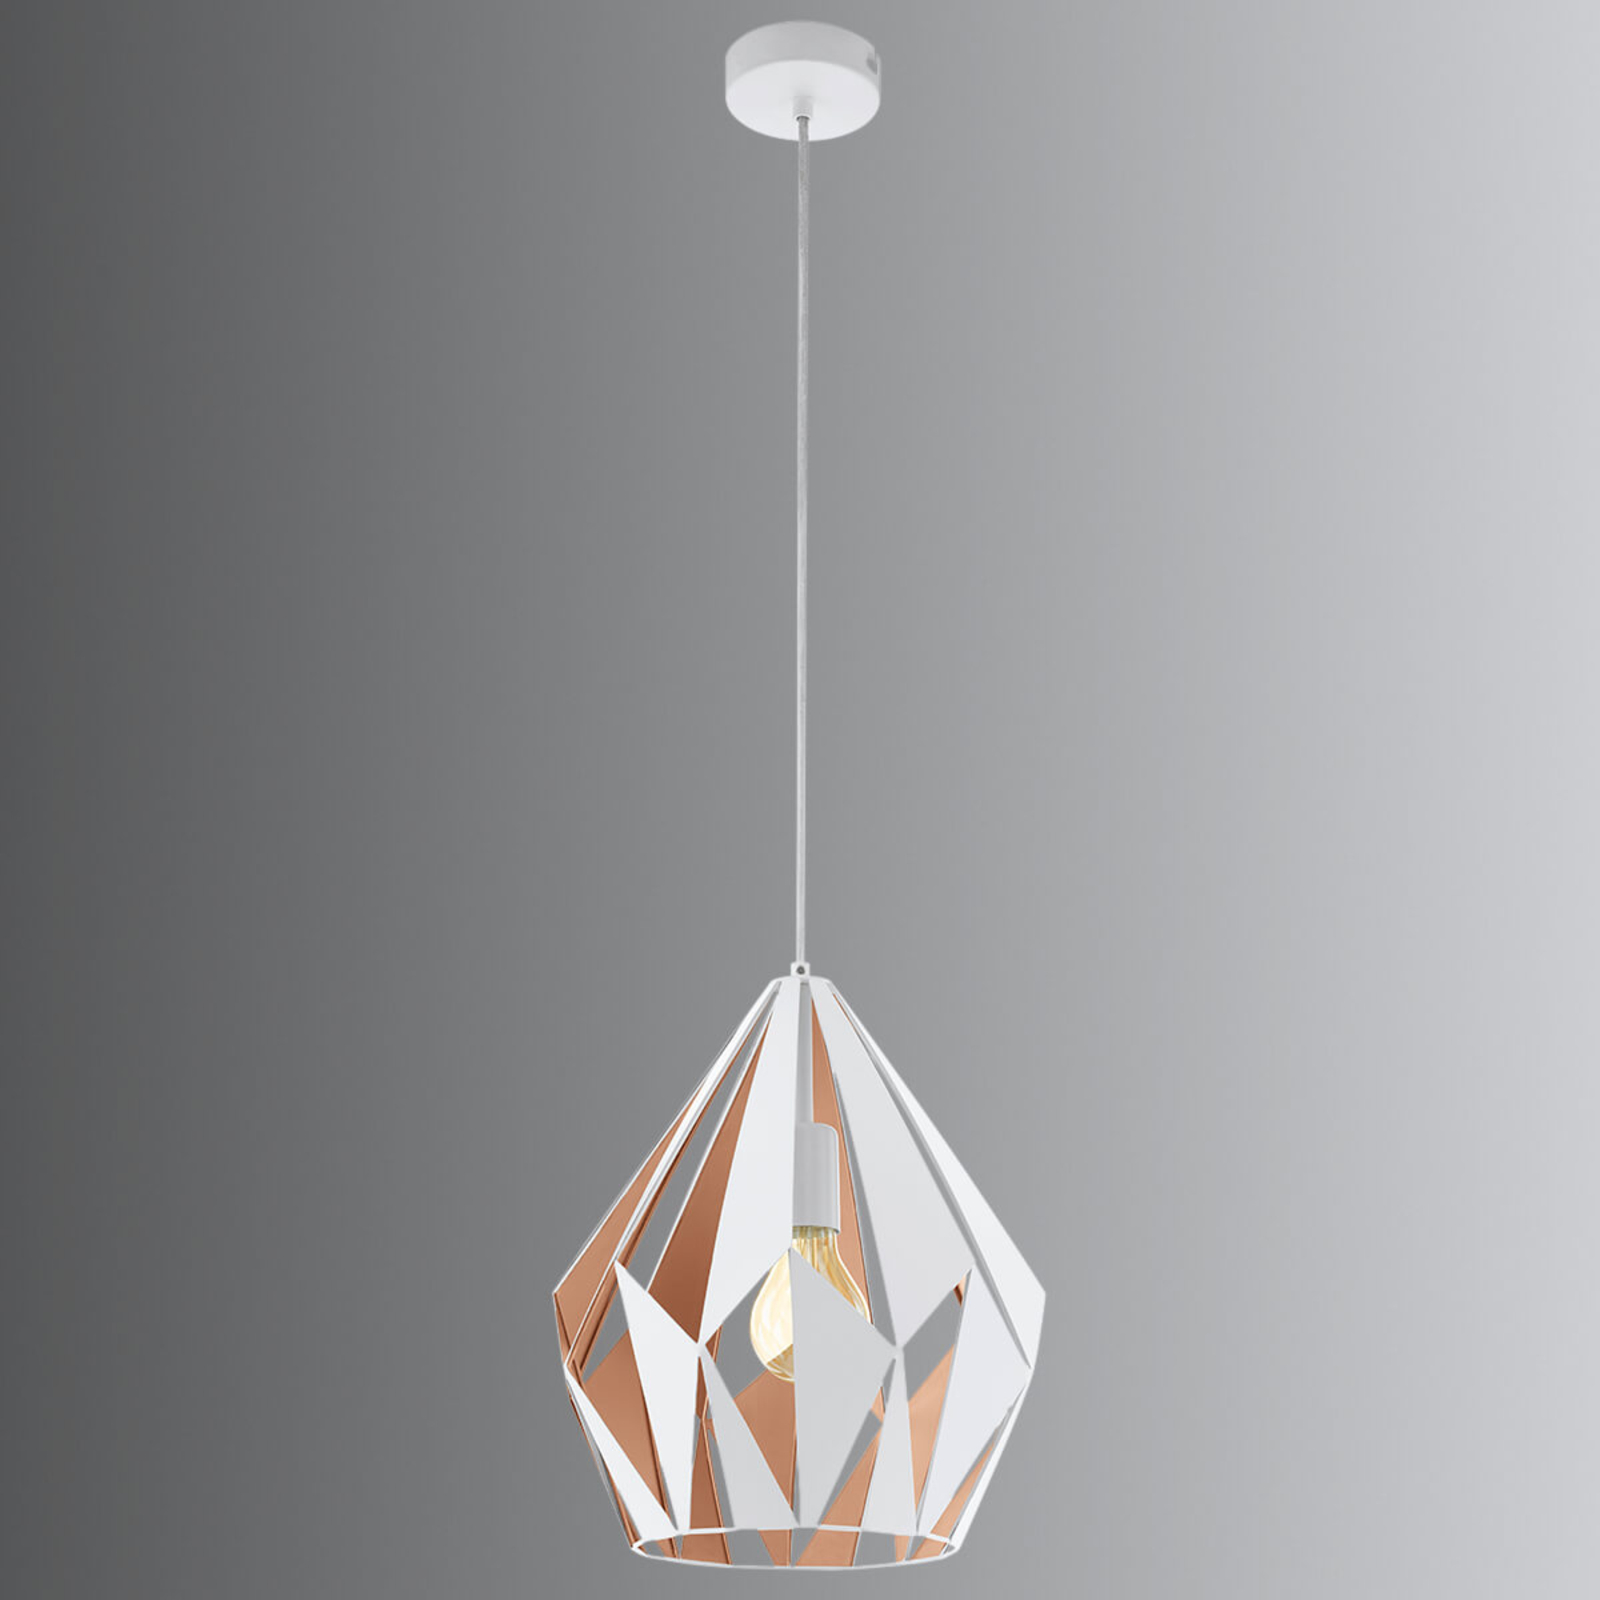 Hanglamp Carlton, wit-goud, Ø 31 cm